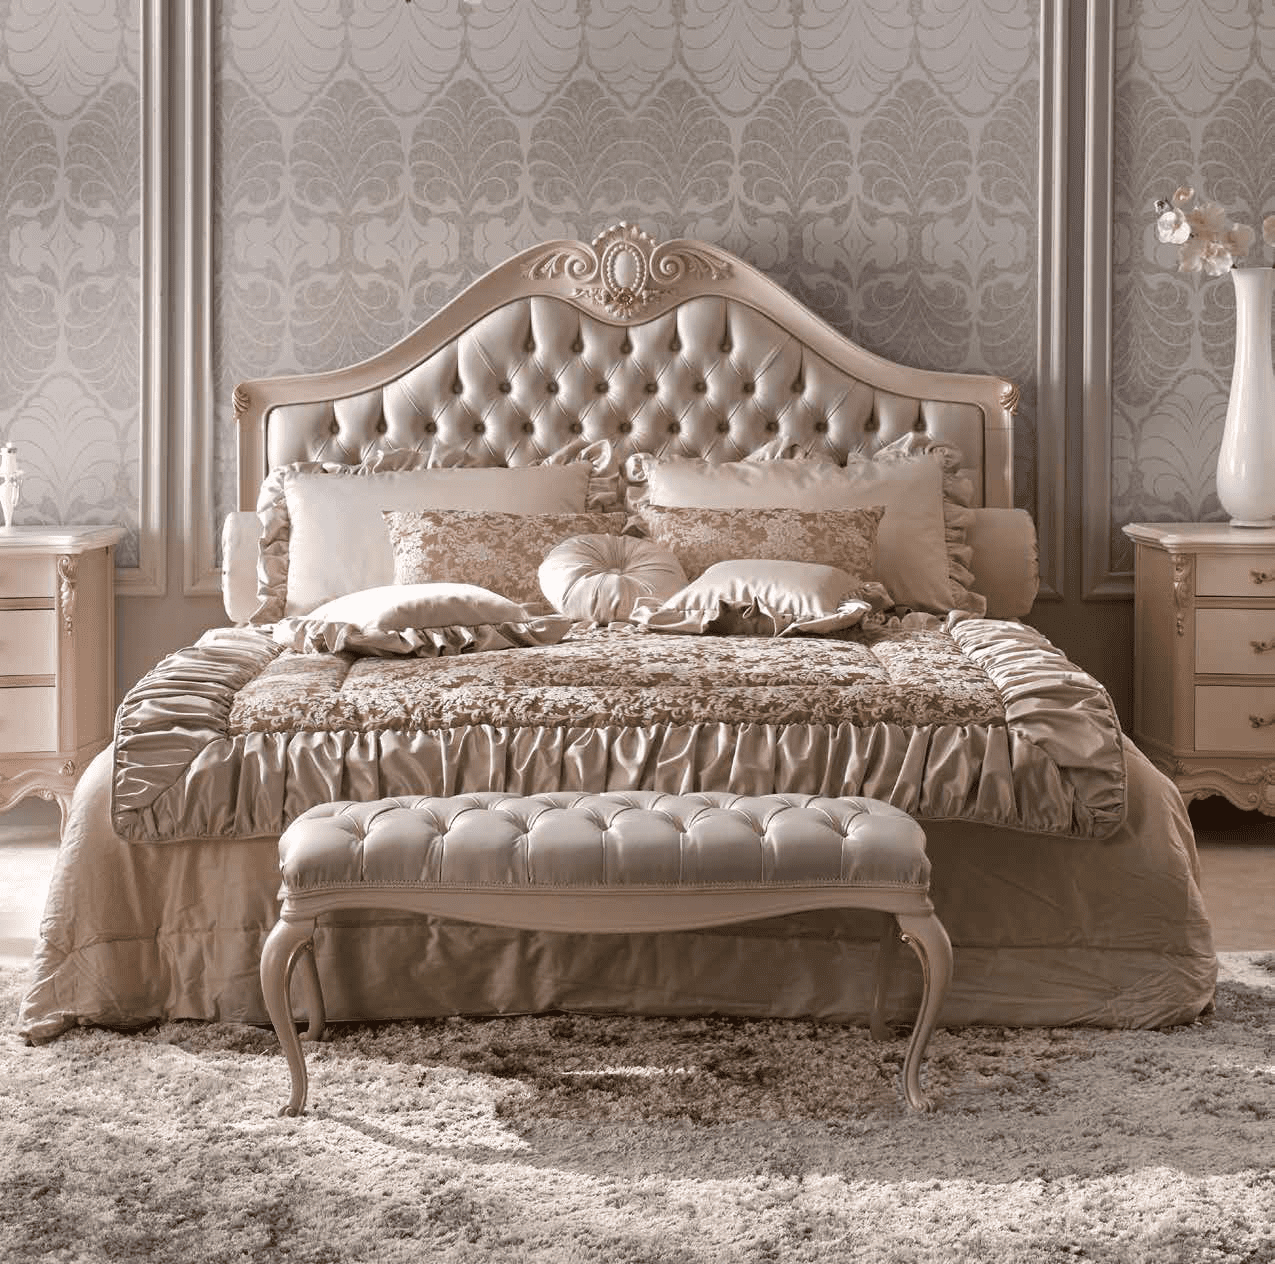 Спальня из коллекции CLASSICO из Италии